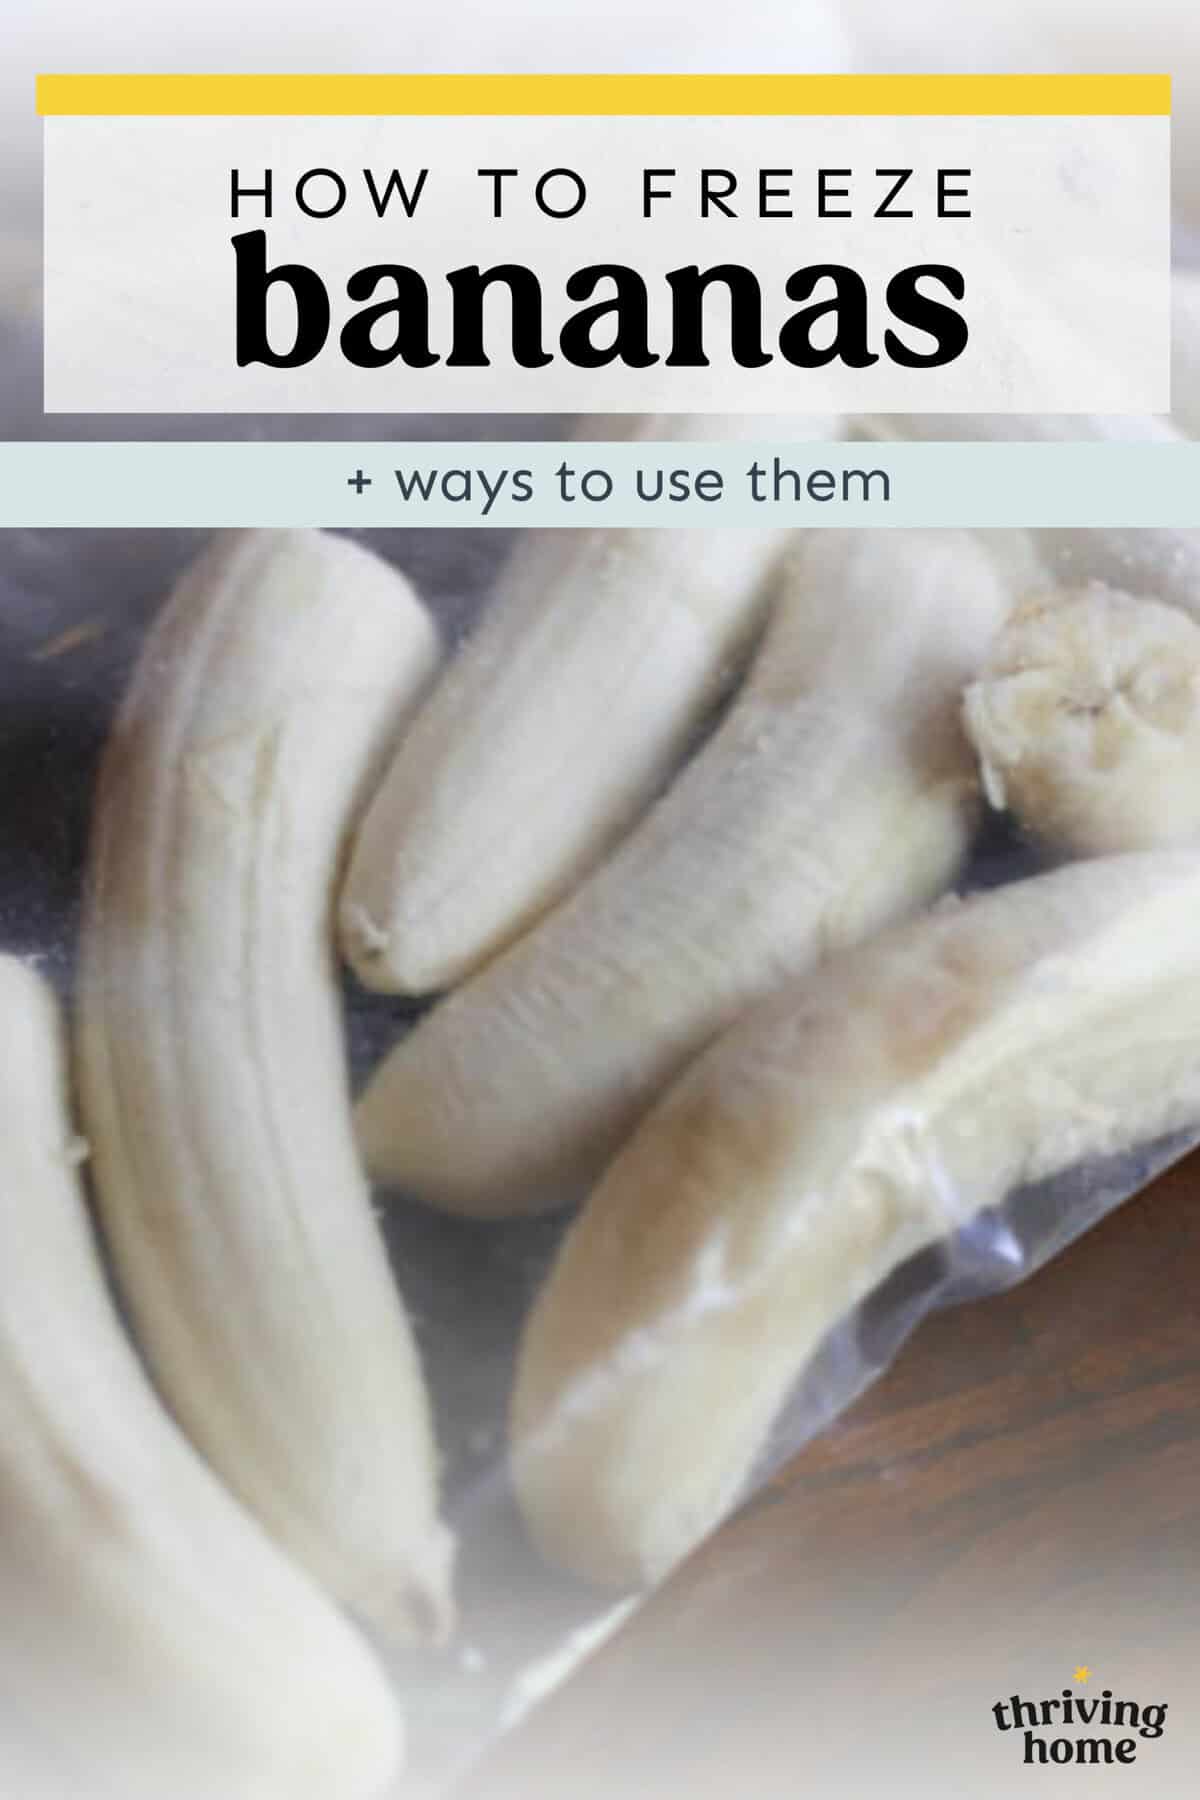 Bananas cut in half in a freezer bag.